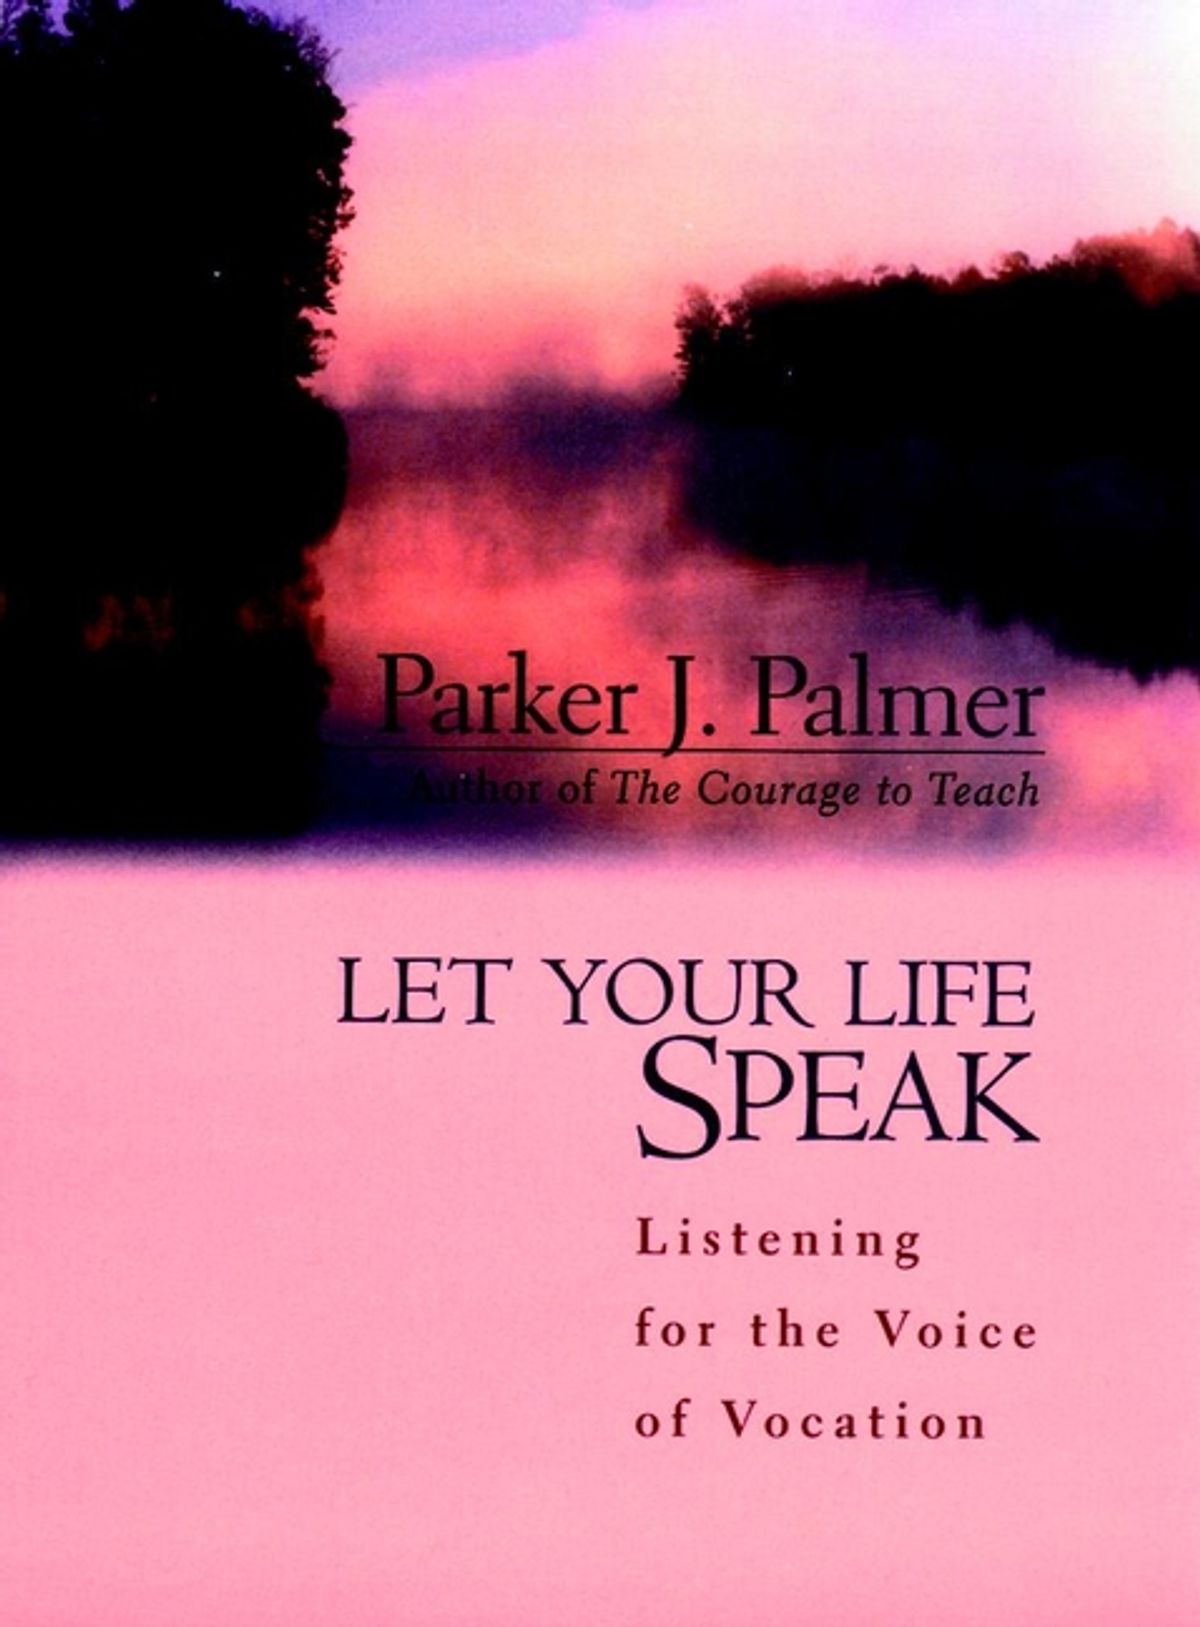 'Let Your Life Speak' by Parker J. Palmer